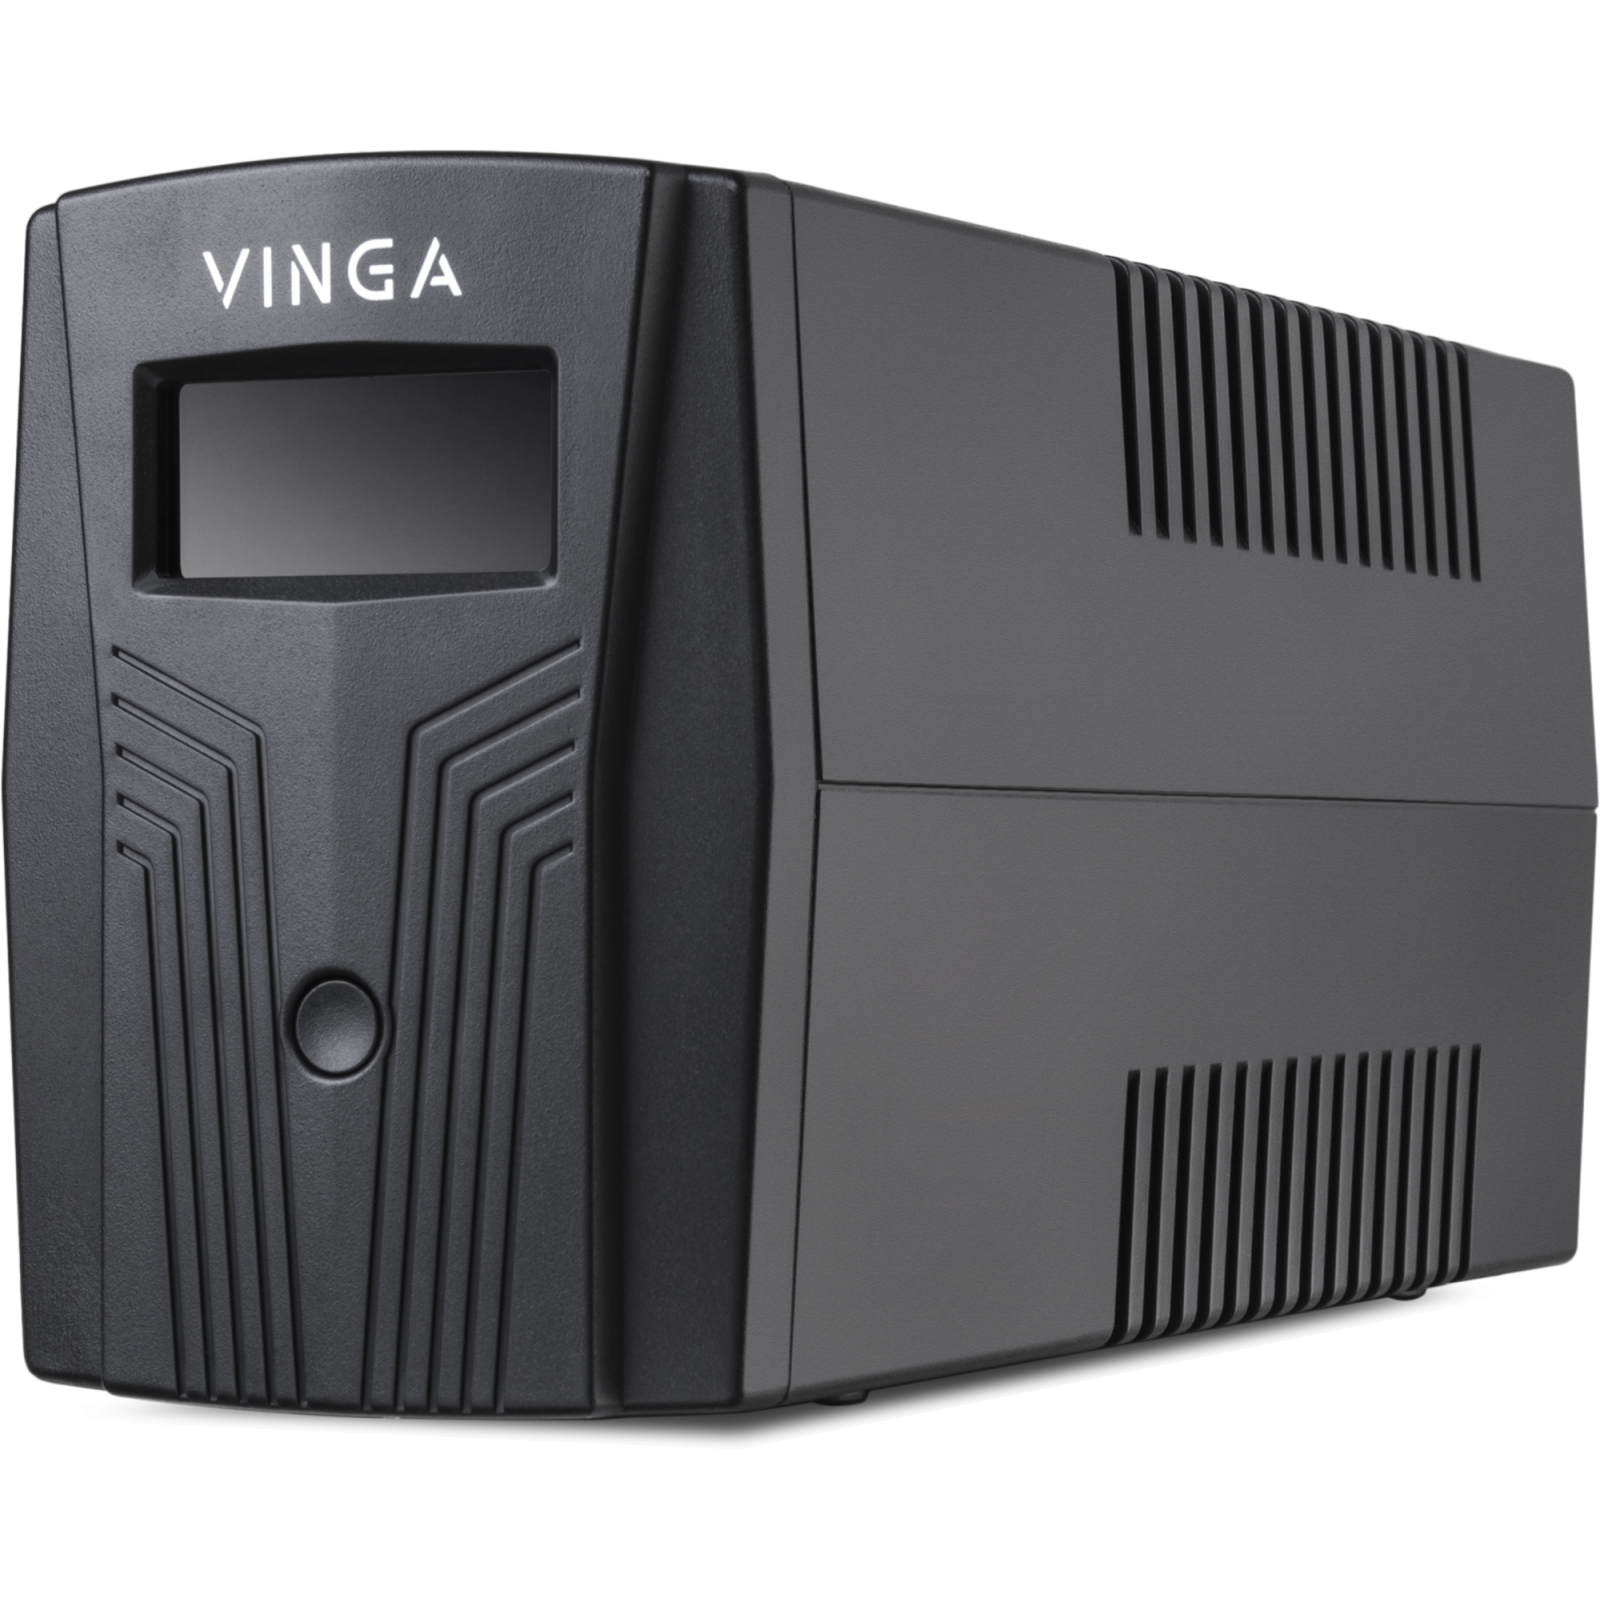 Источник бесперебойного питания Vinga LCD 600VA plastic case (VPC-600P) изображение 6